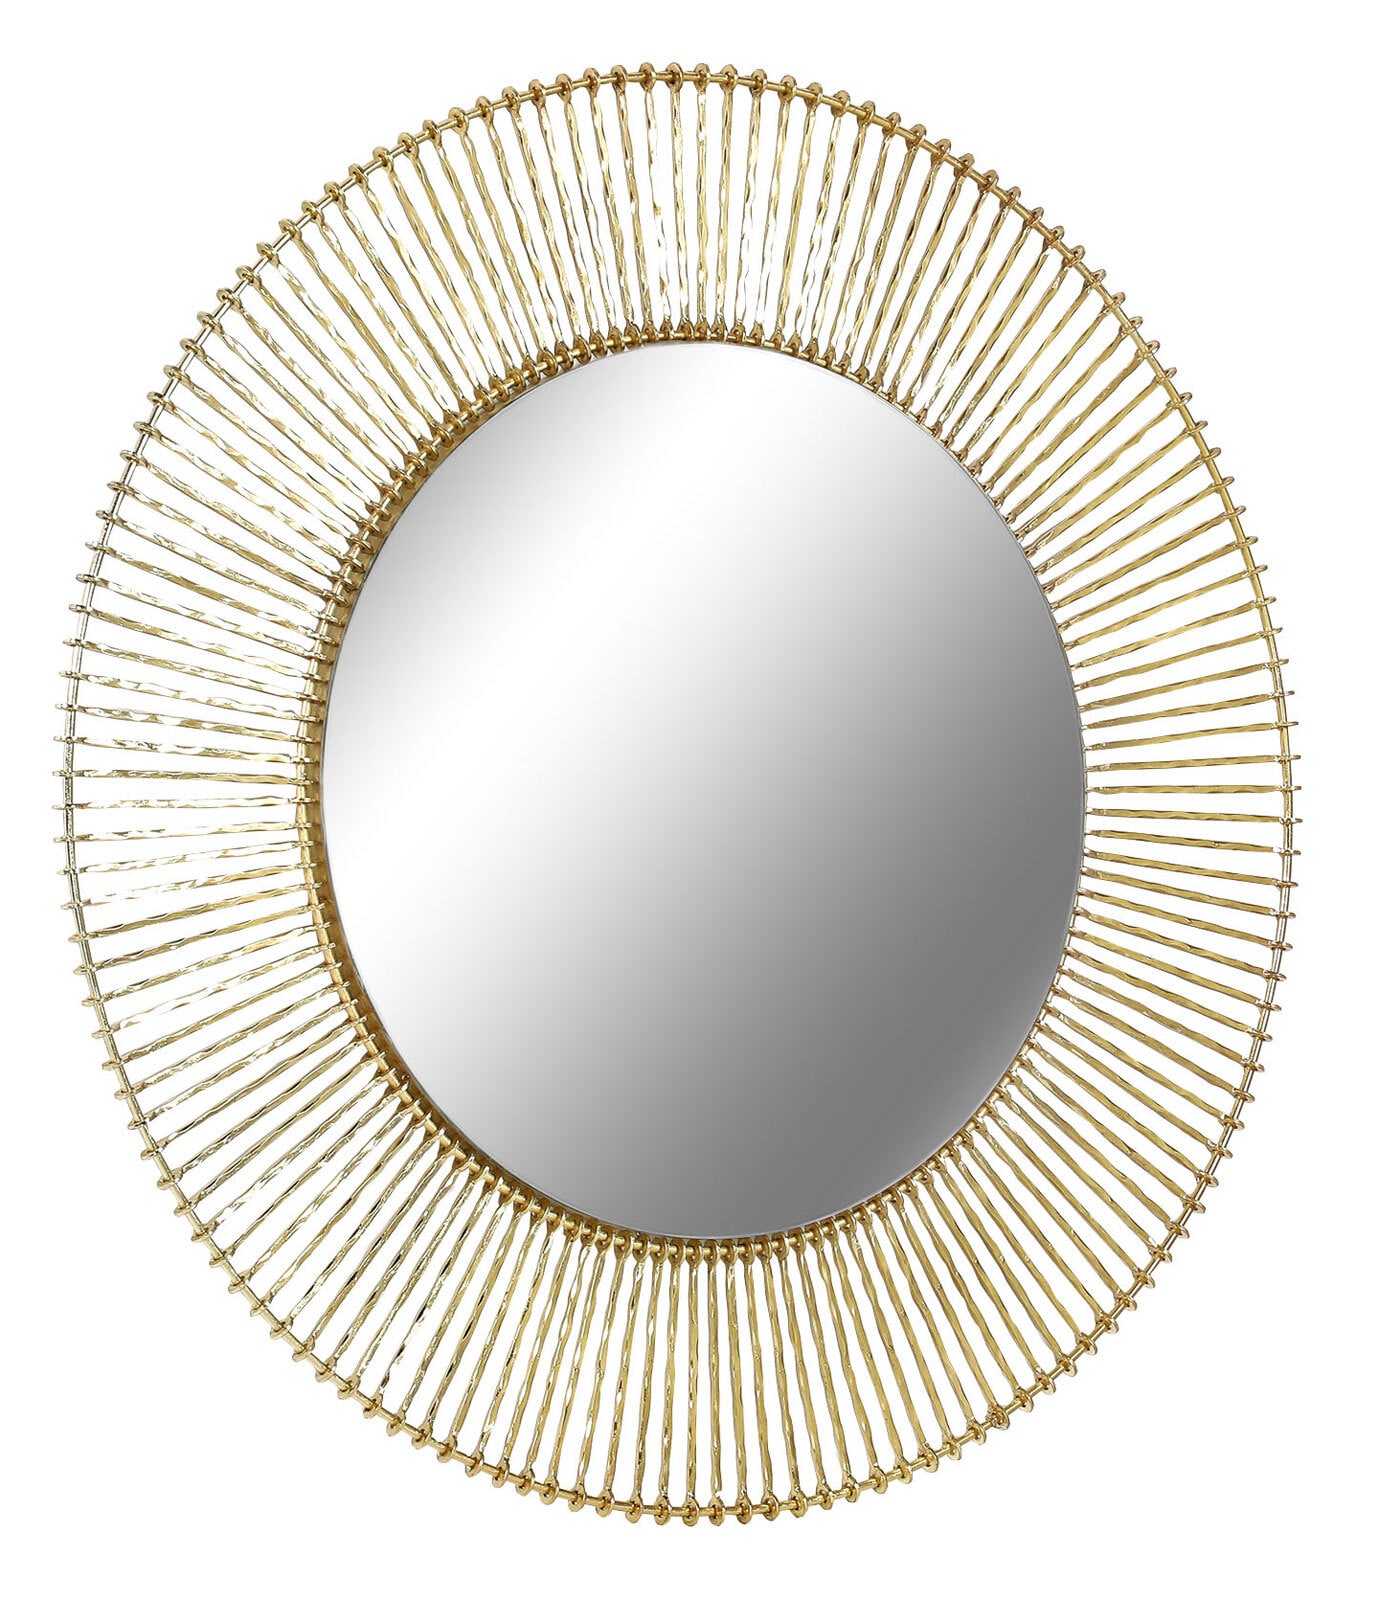 INTERhome Spiegel rund MODA 73 cm goldfarbig